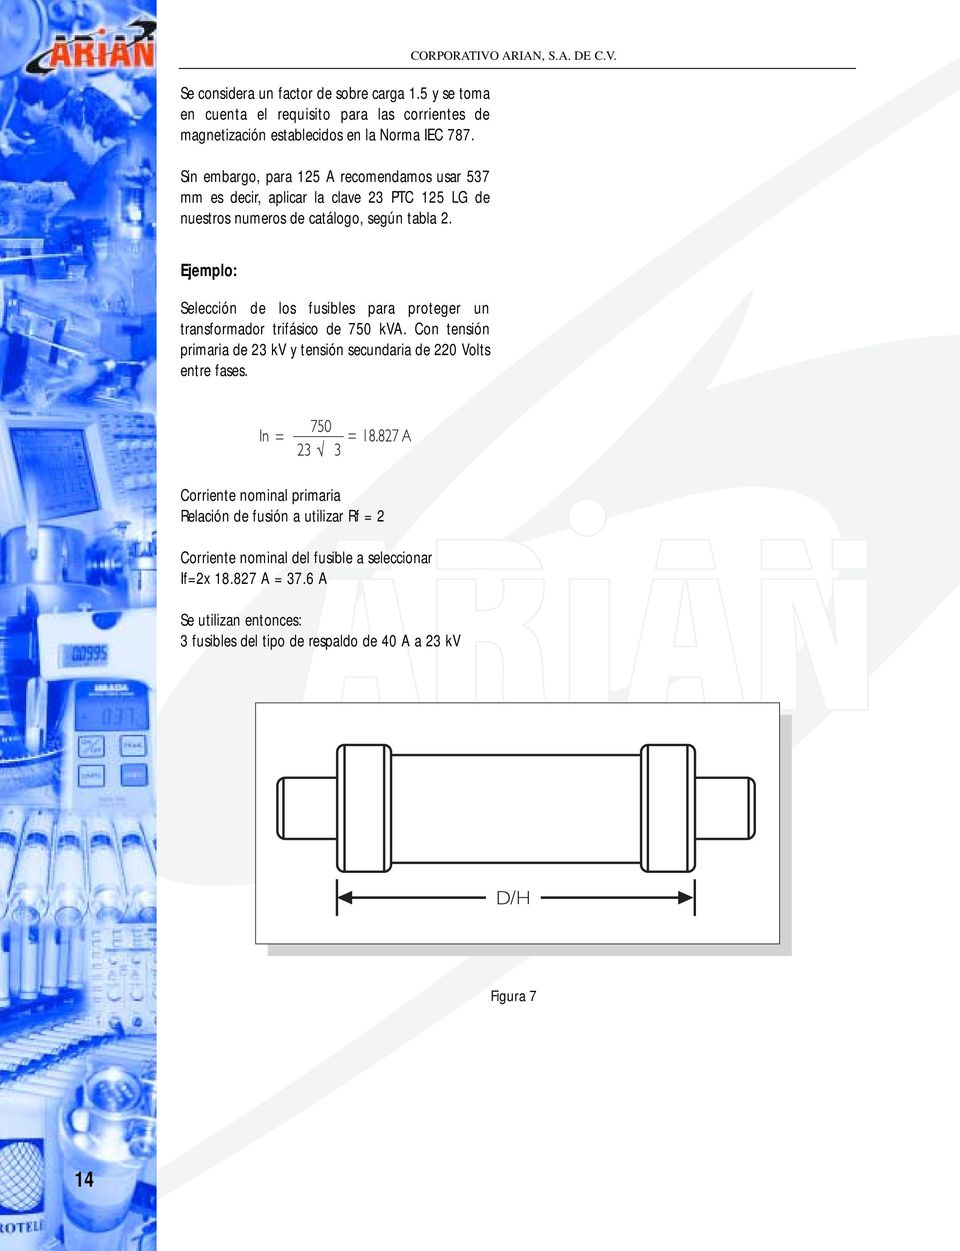 ARIAN, S.A. DE C.V. Ejemplo: Selección de los fusibles para proteger un transformador trifásico de 750 kva.